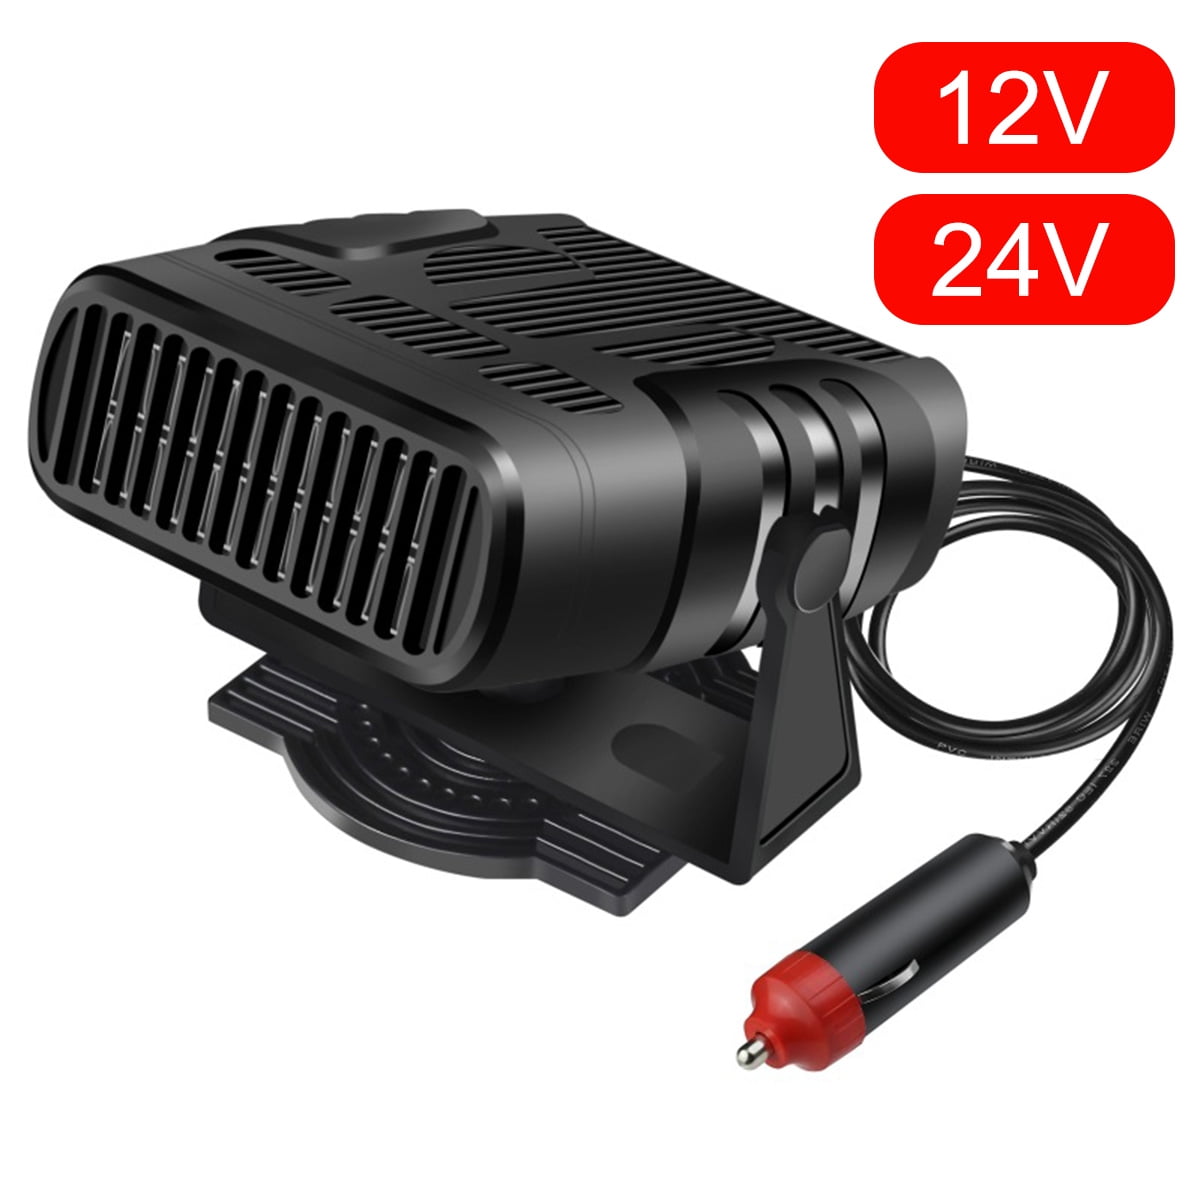 Car Heater & Fan 12V Portable Cooller Defrost Defogger Automobile 3-Outlet Plug Fast Cooling & Heating 